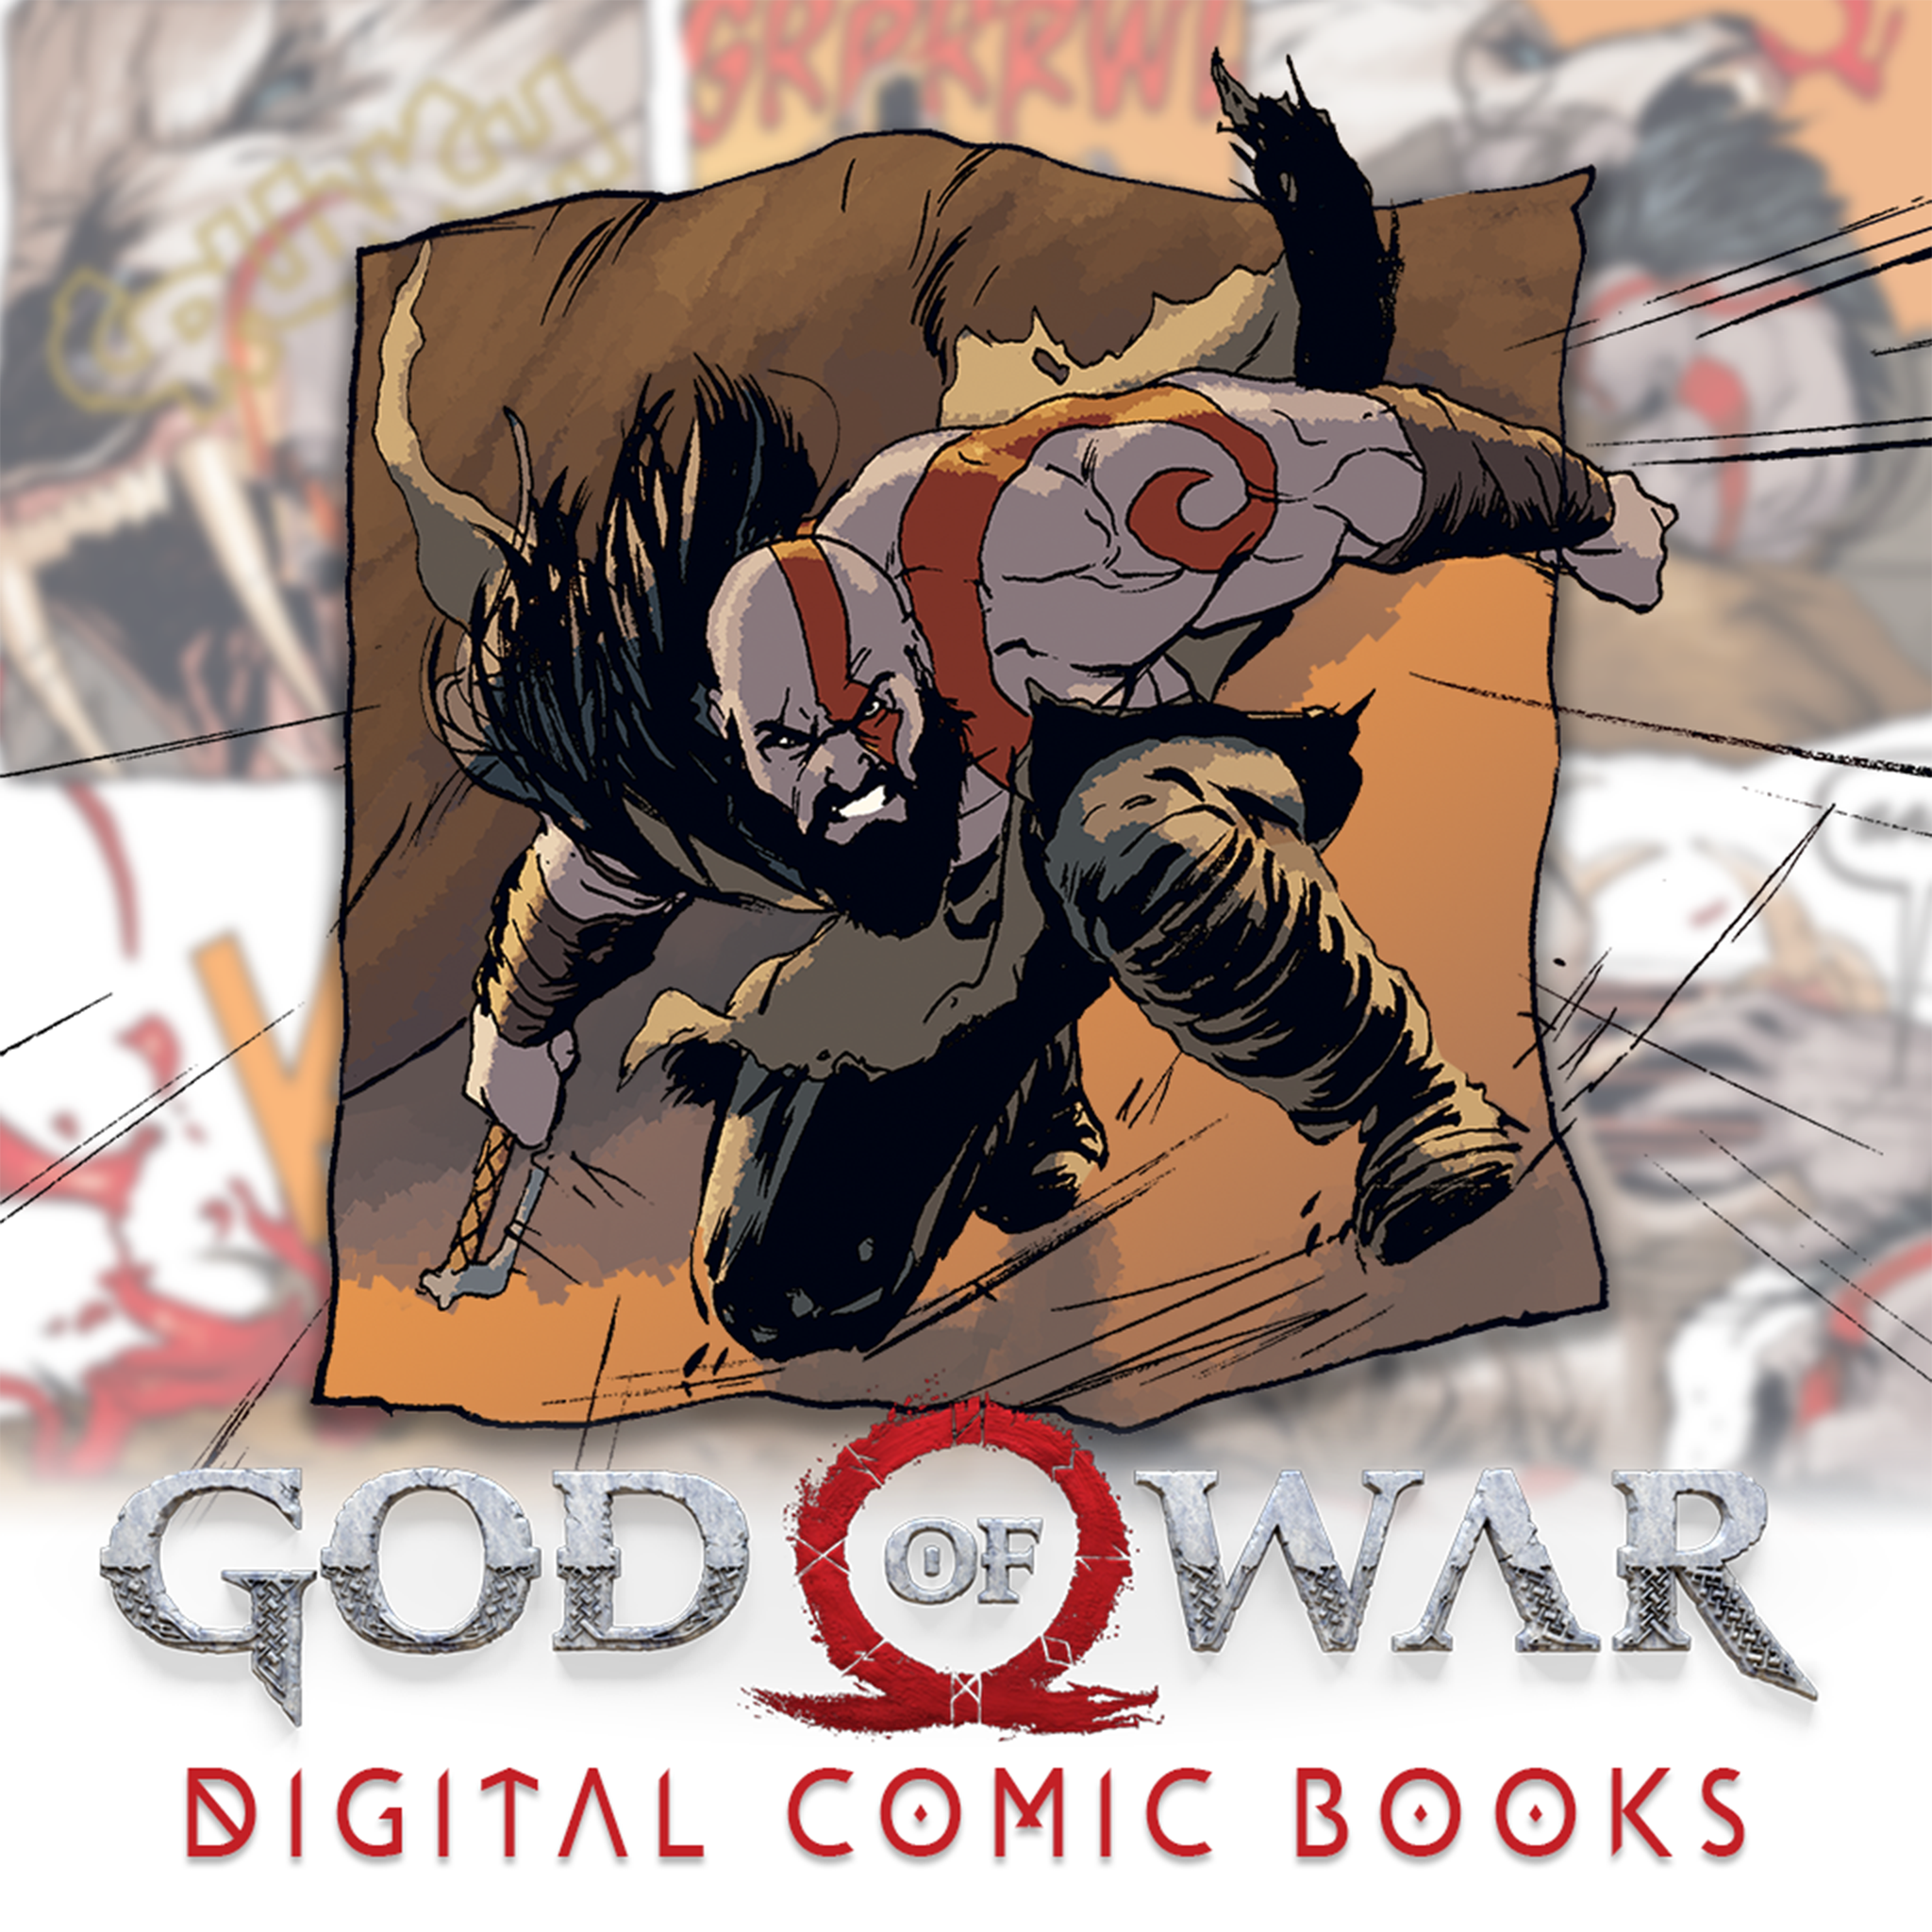 God of war comics